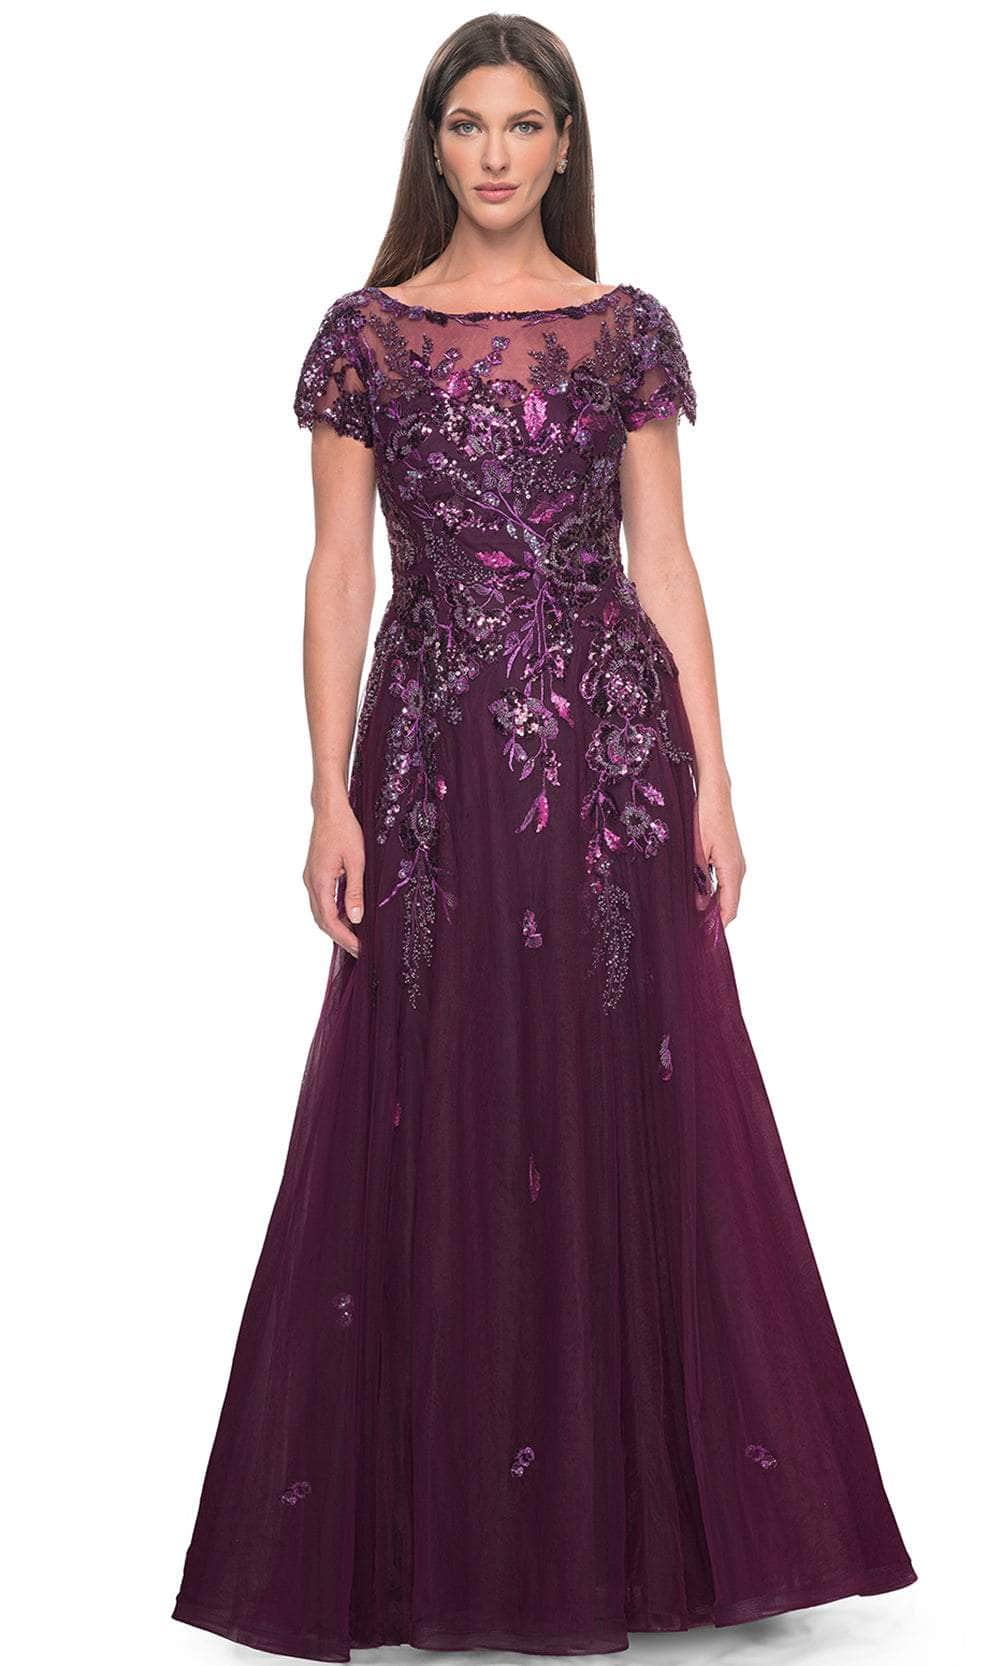 Image of La Femme 31712 - Floral Lace Applique A-line Evening Dress